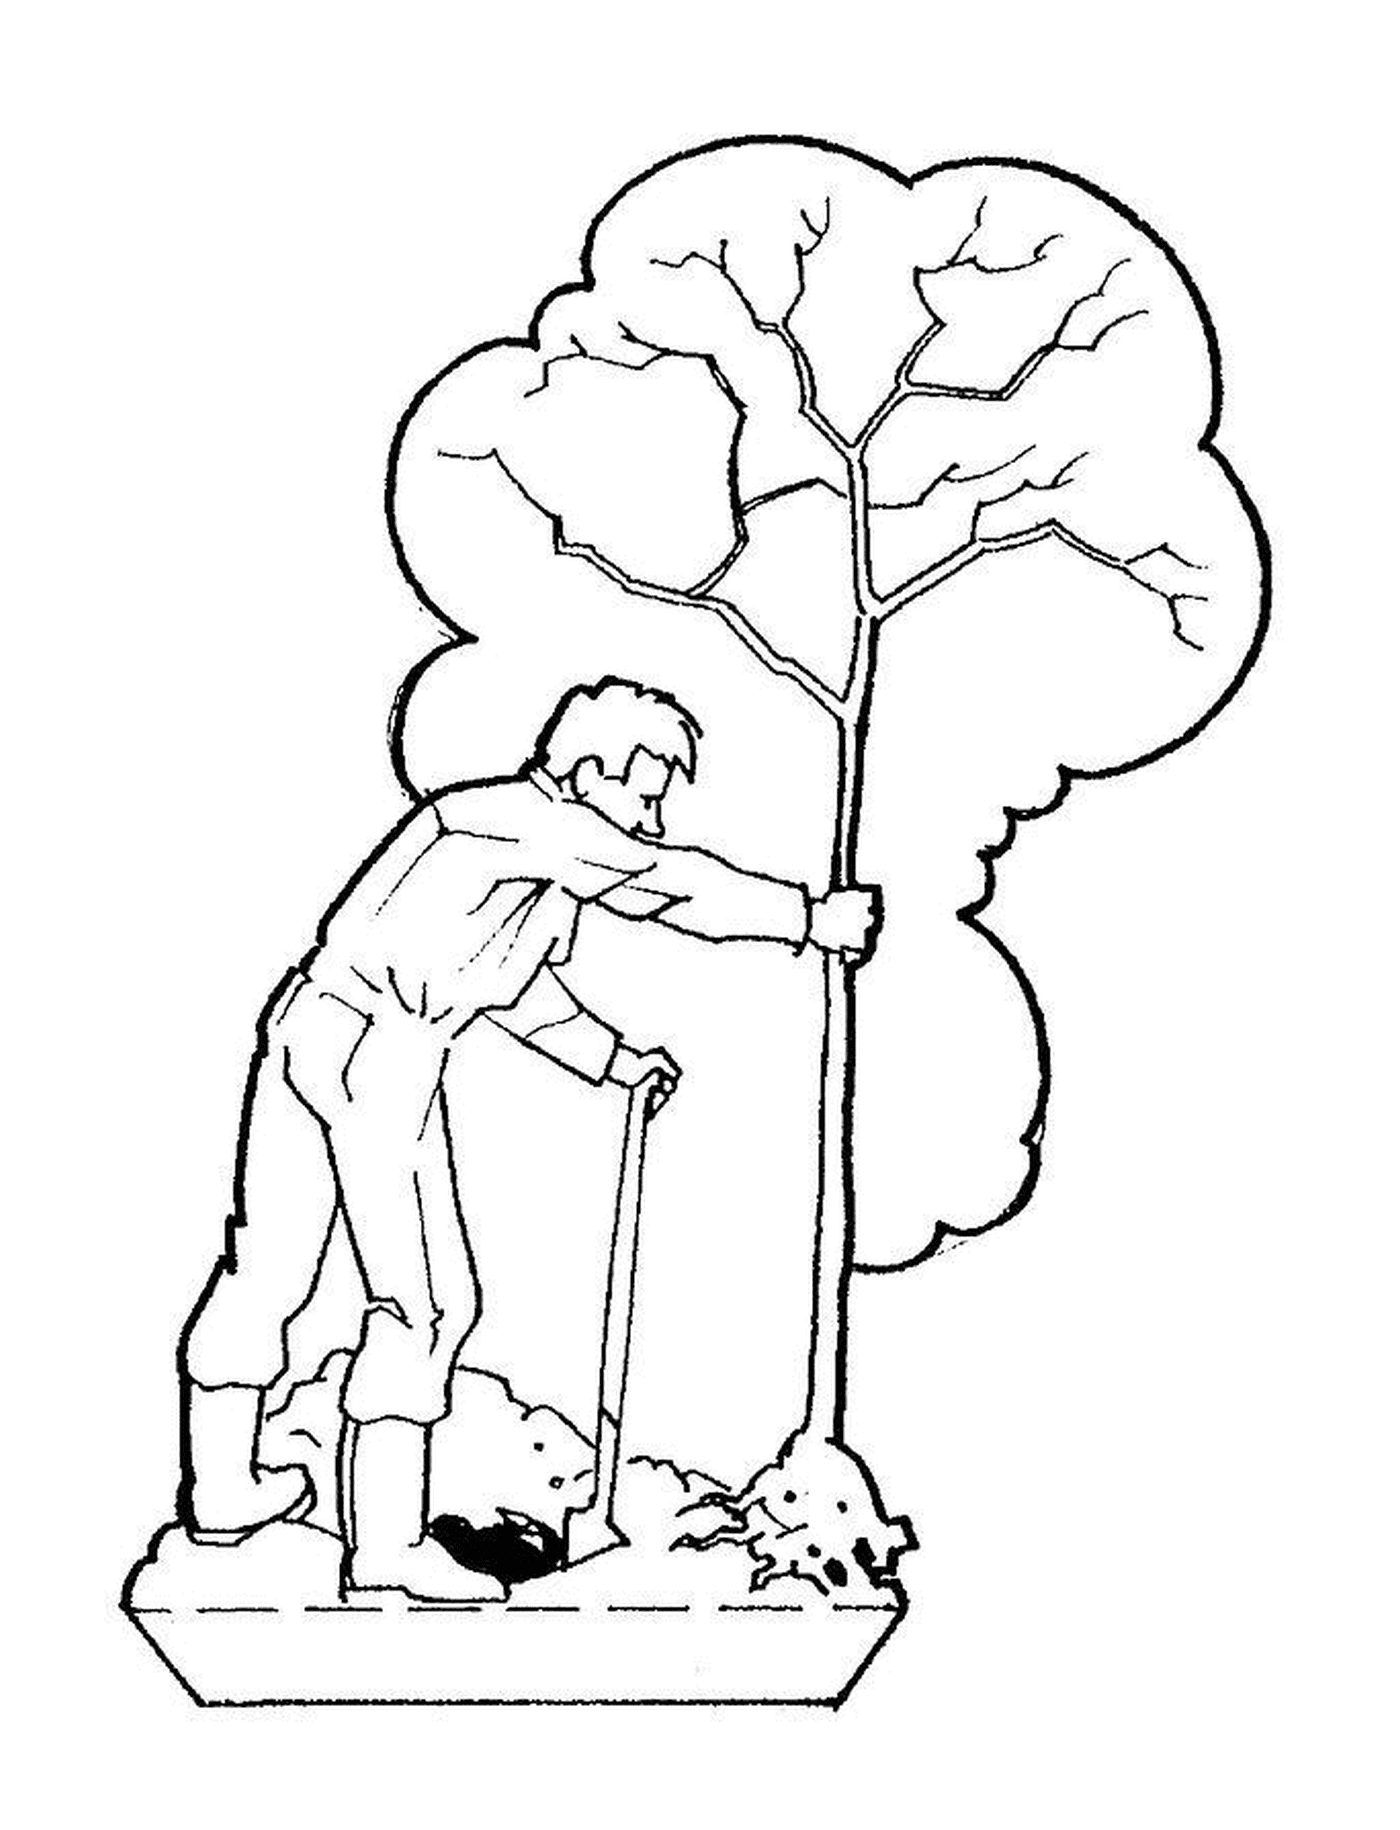  Un hombre corta un árbol con un palo 